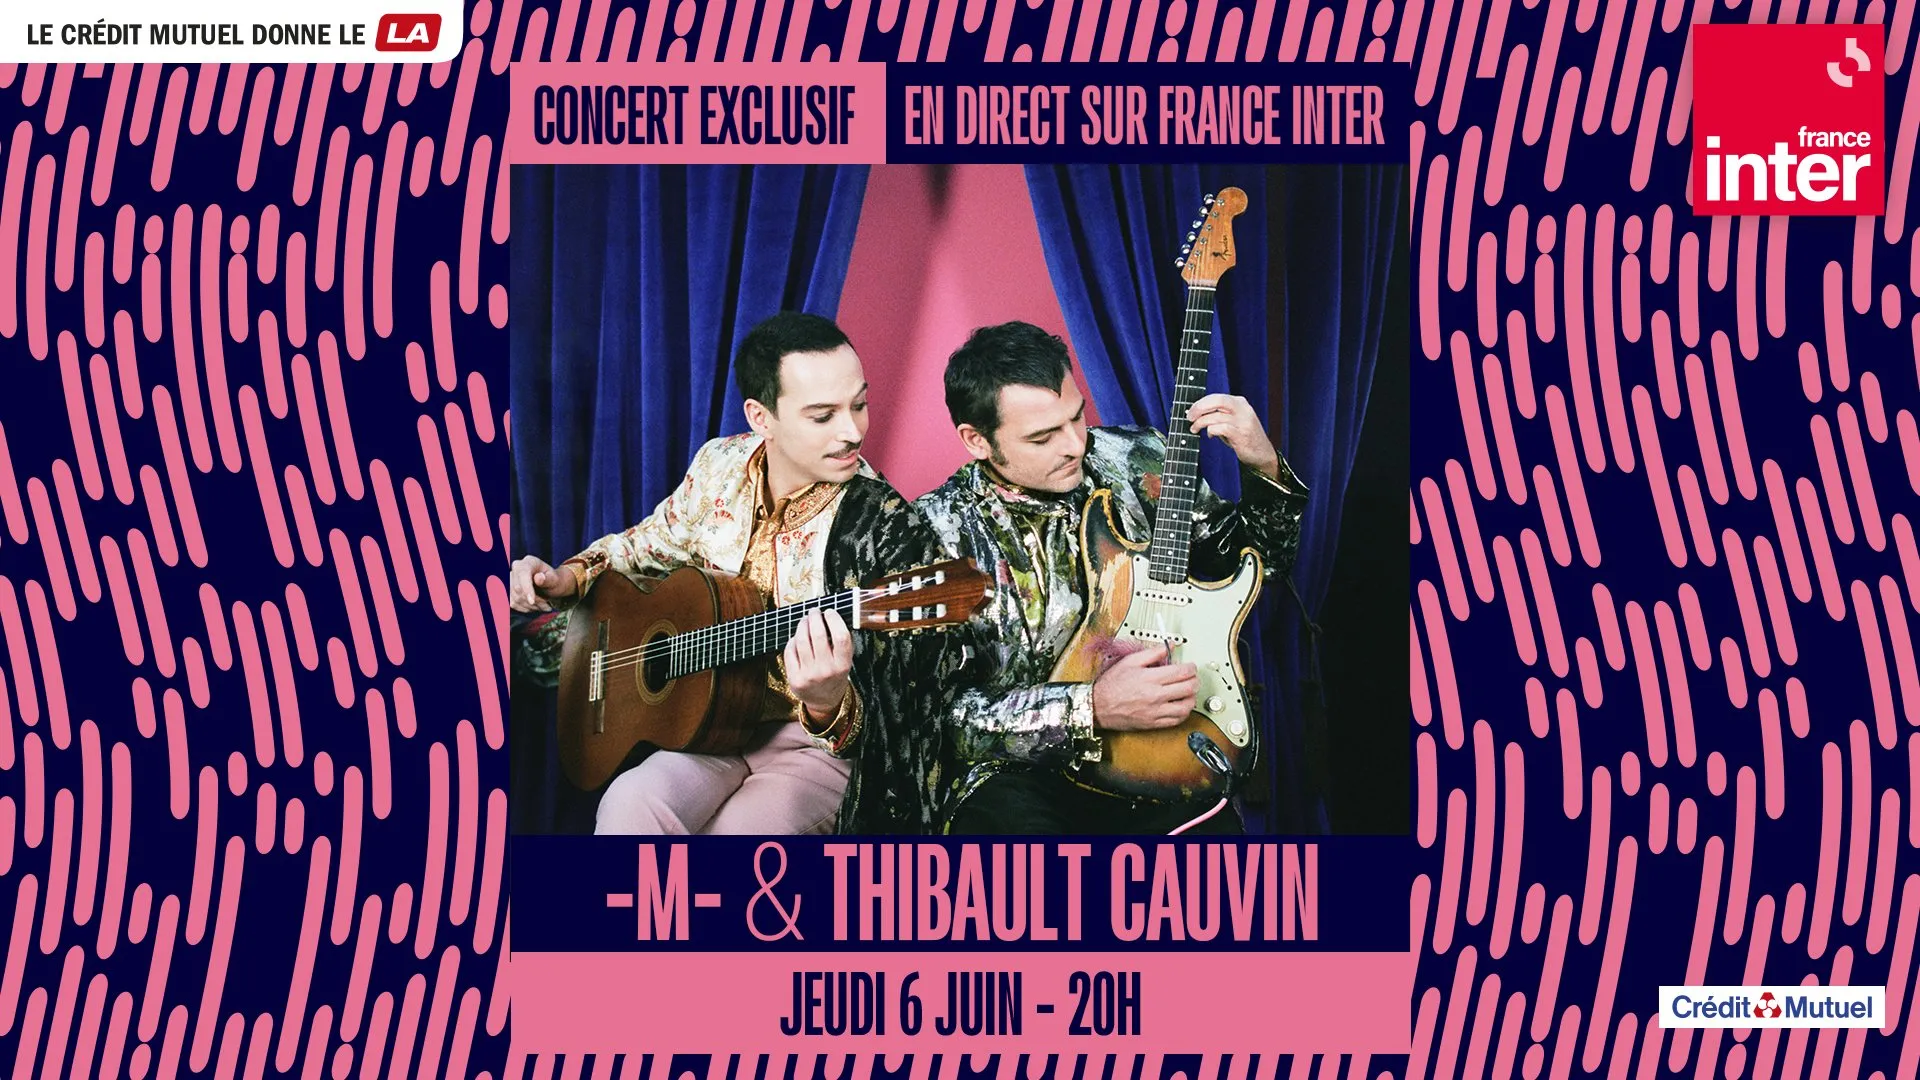 -M- & Thibault Cauvin